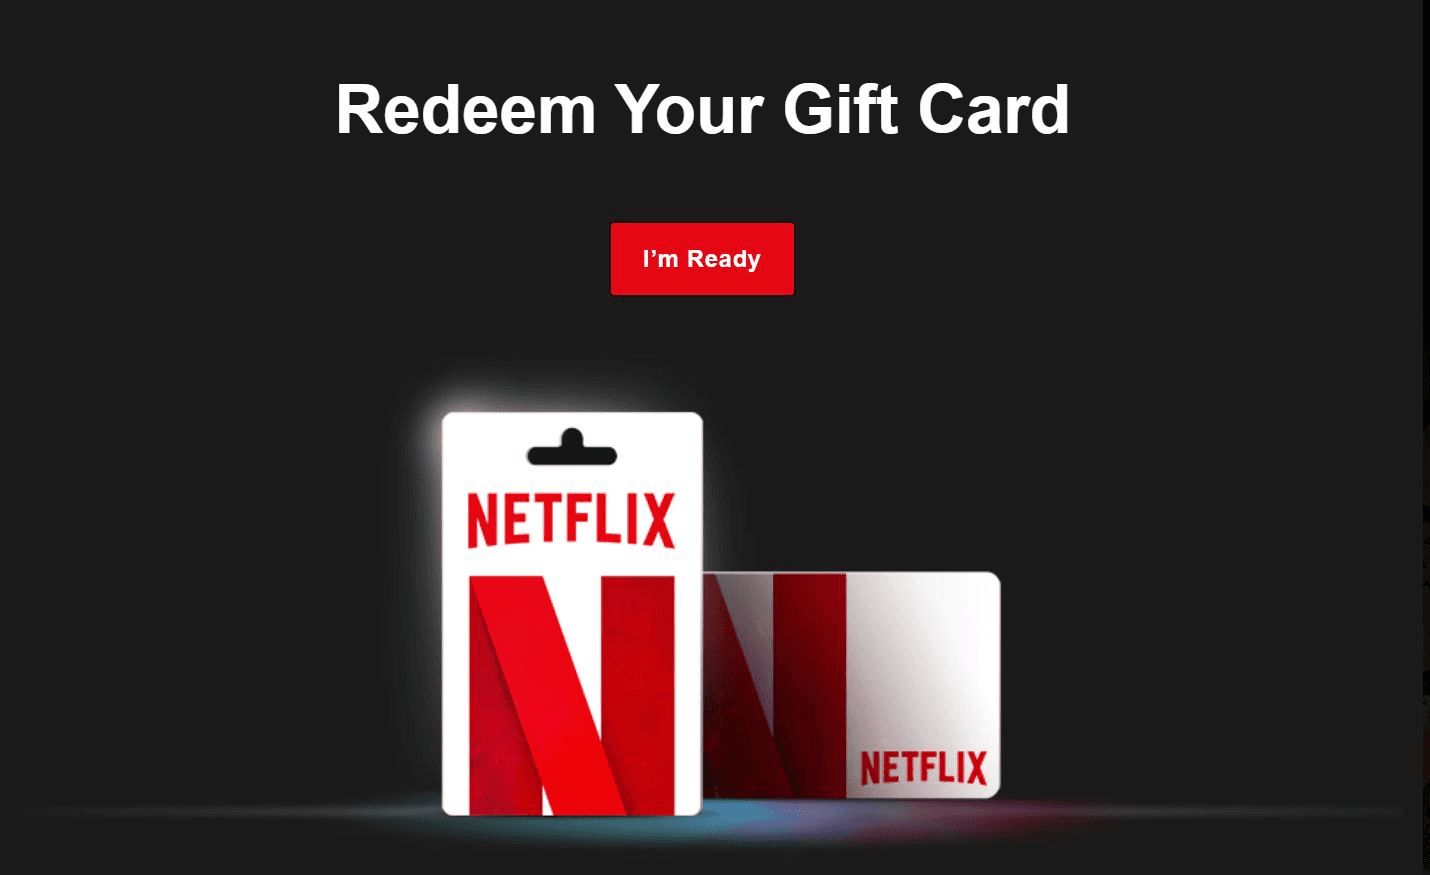 Website to redeem Netflix gift card